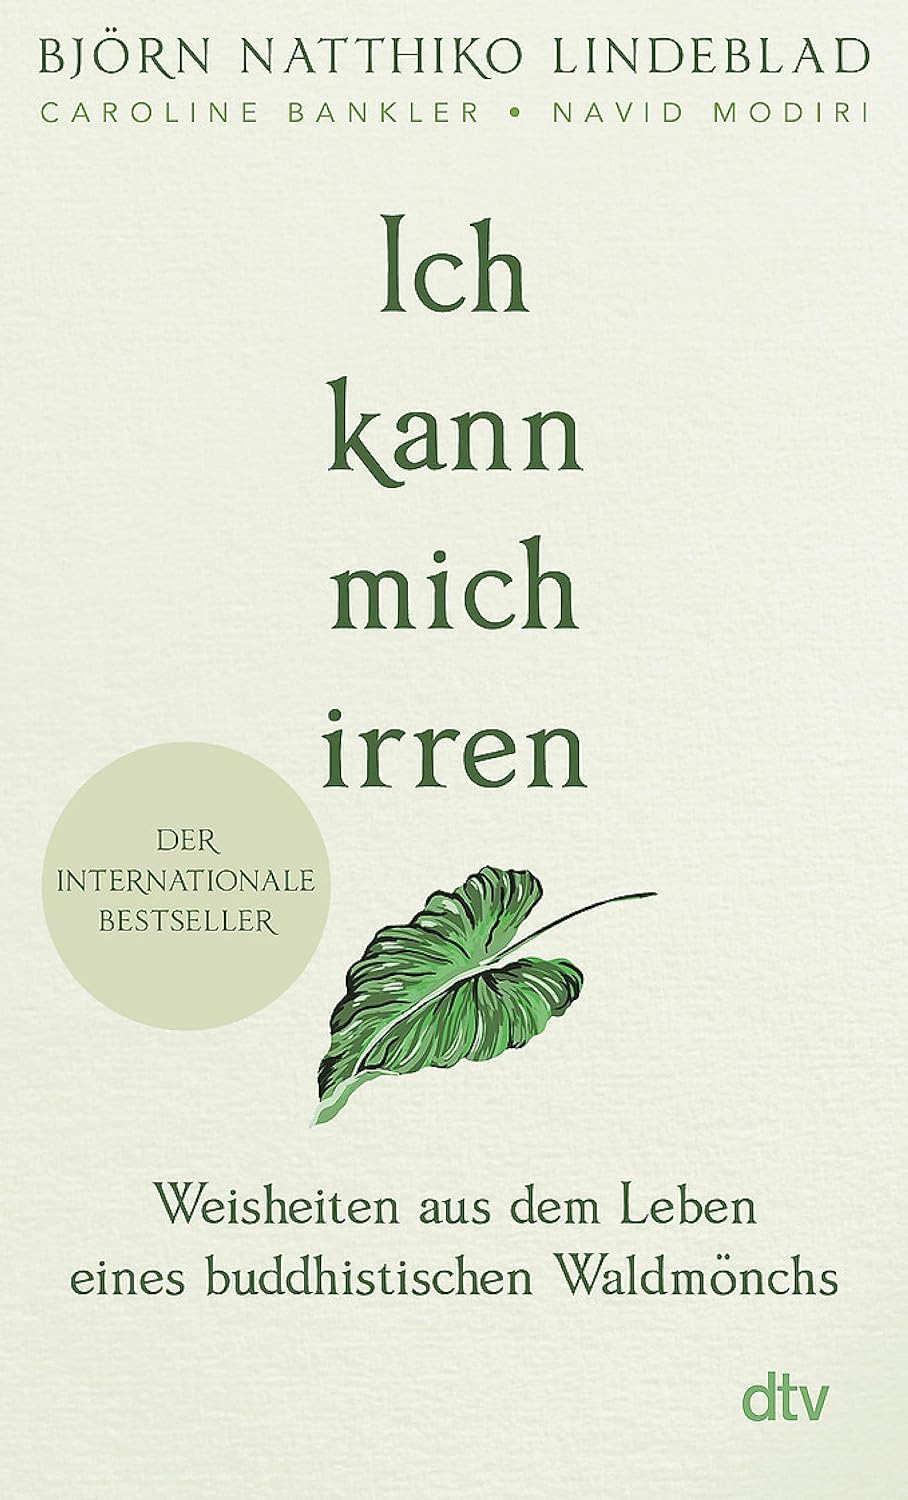 Björn Natthiko Lindeblad: Ich kann mich irren (Paperback, Deutsch language, 2021, dtv)